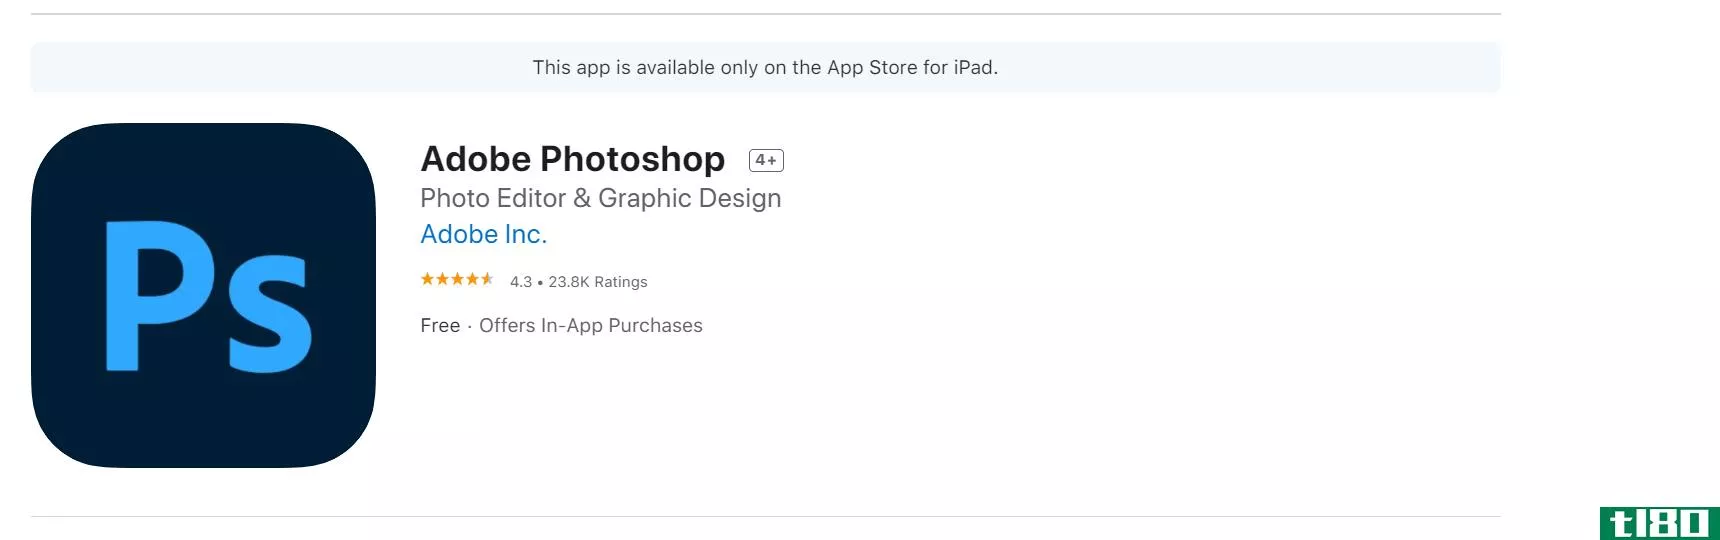 photoshop App Store